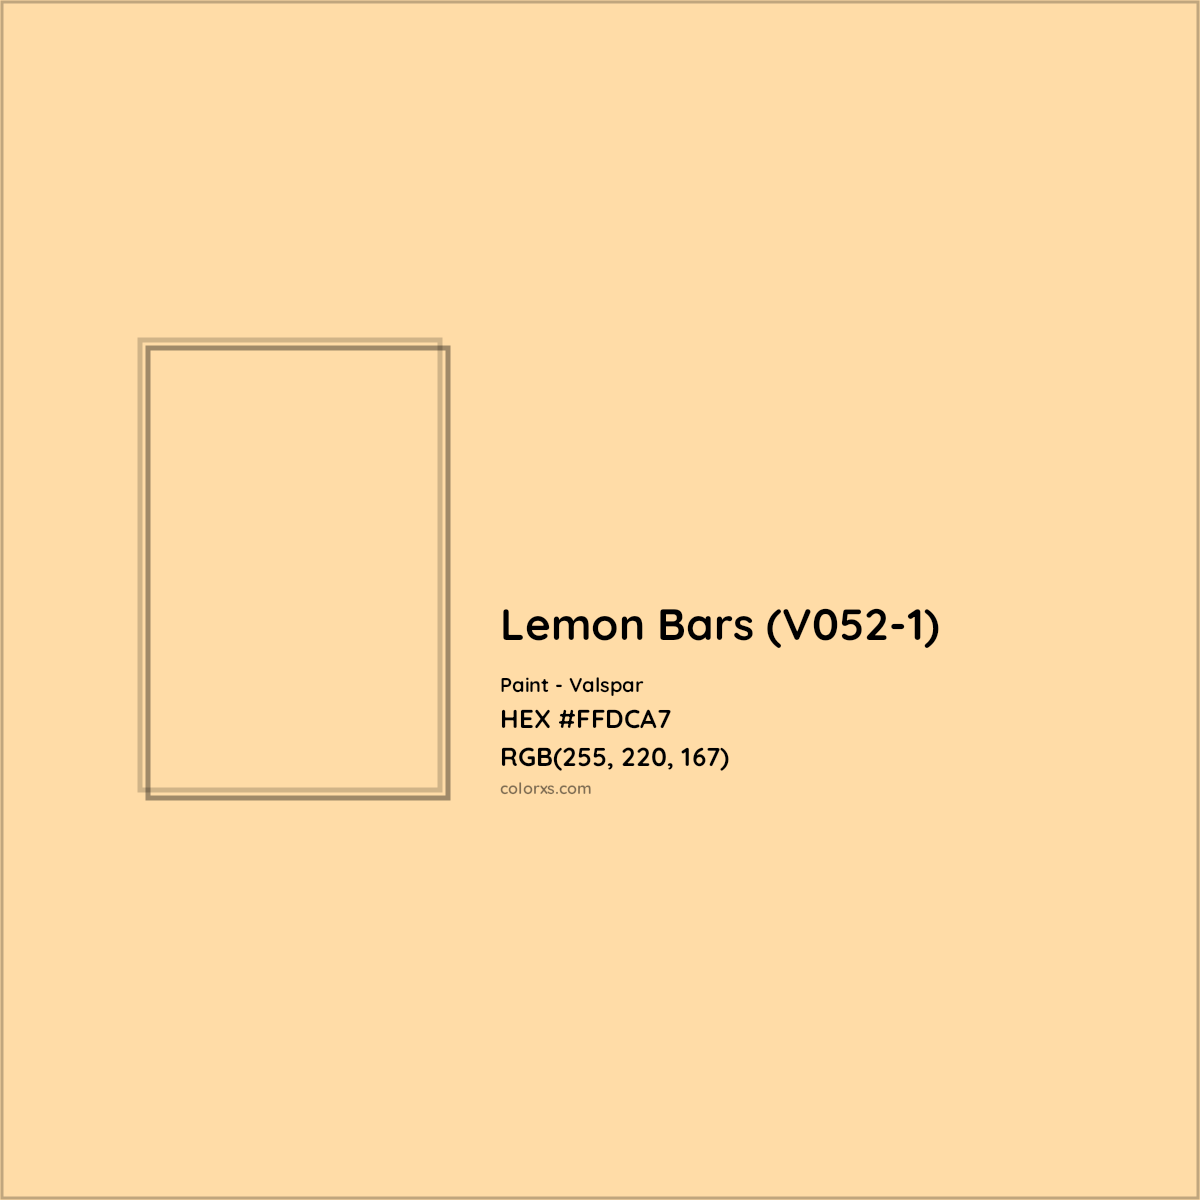 HEX #FFDCA7 Lemon Bars (V052-1) Paint Valspar - Color Code